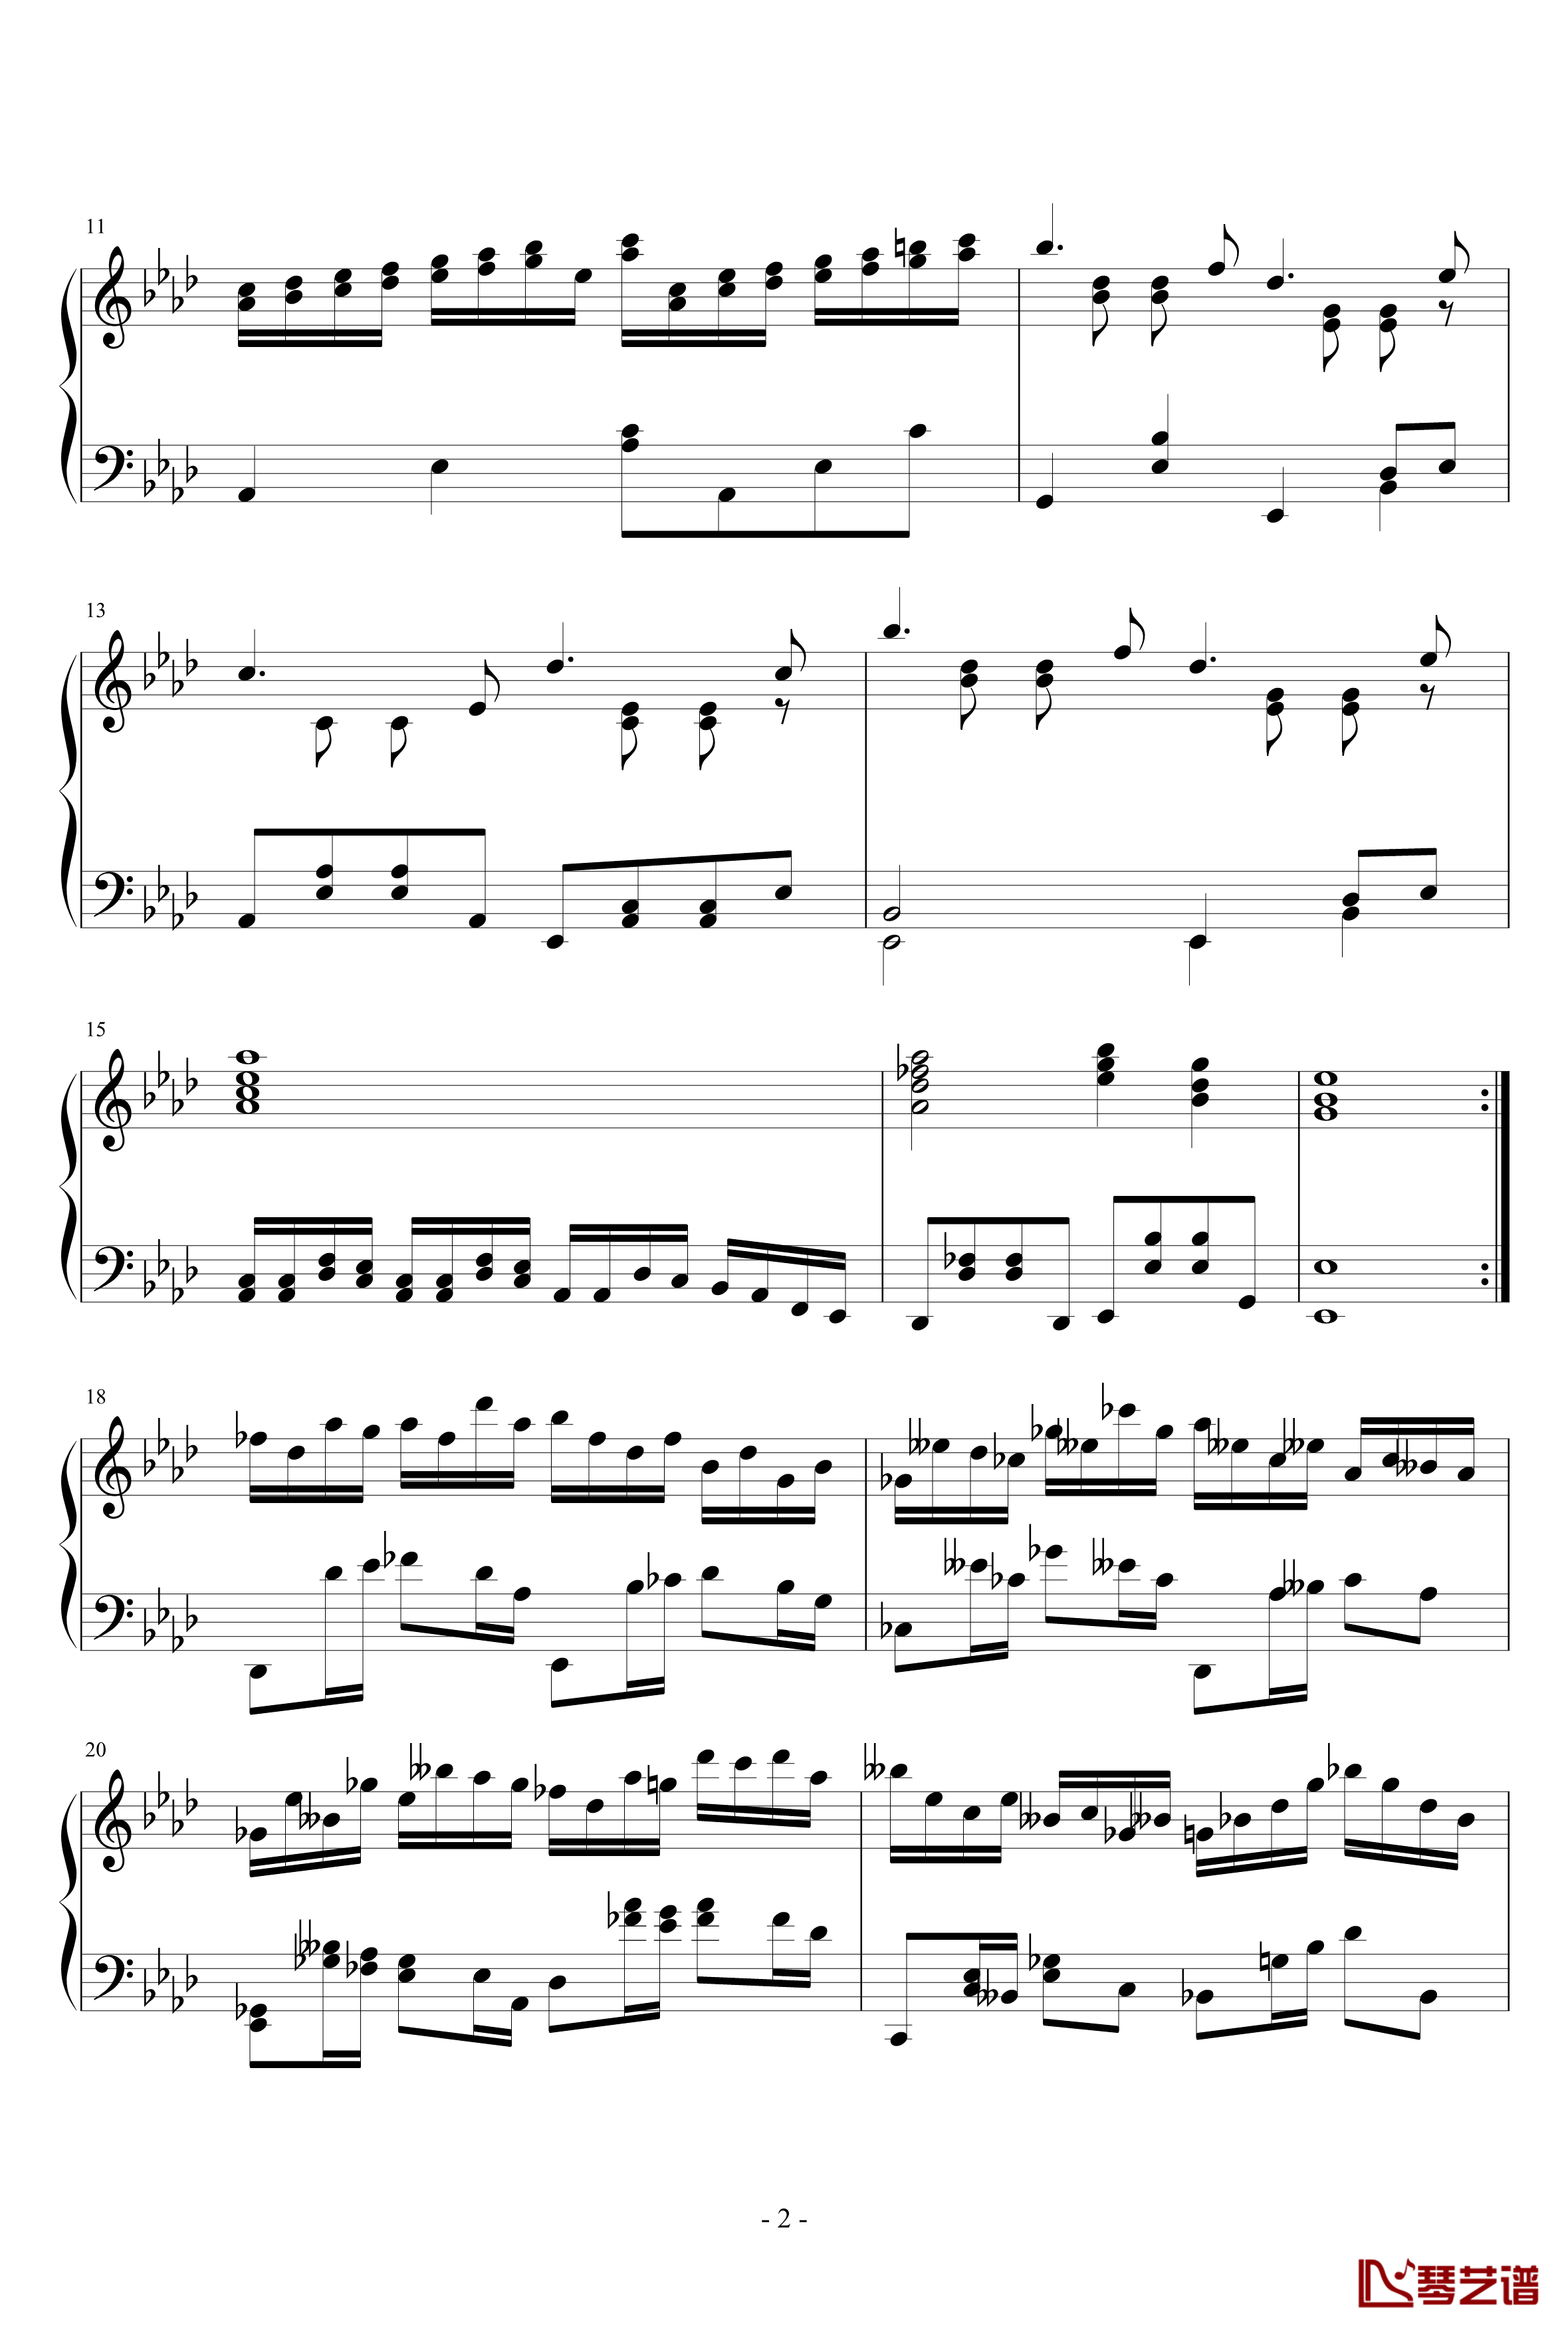 第二钢琴奏鸣曲第二乐章钢琴谱-nzh19342